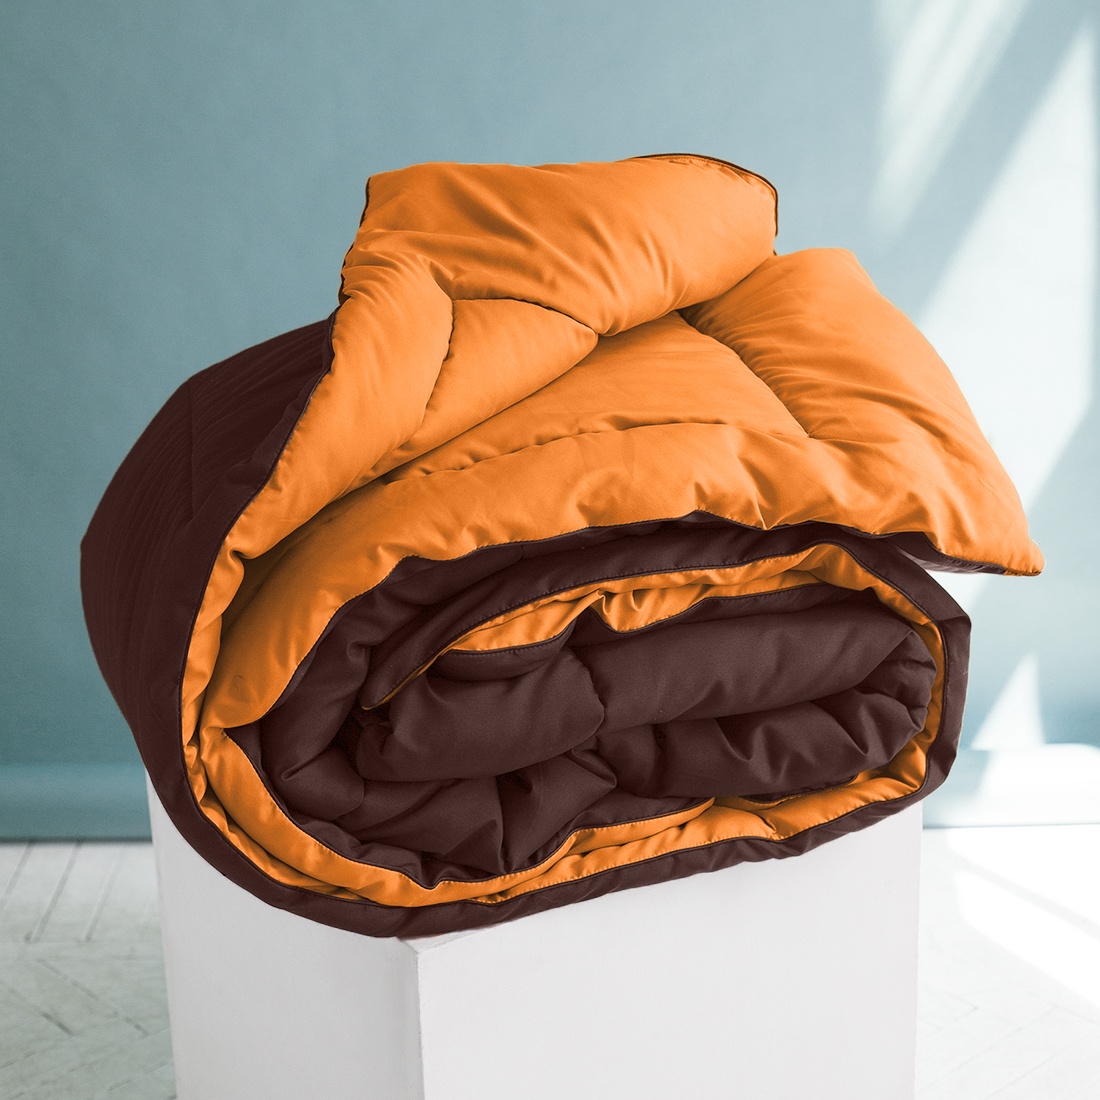 фото Одеяло "SleepiX", Мультиколор, цвет: оранжевый, темно-коричневый, 220х240 см Sleep ix